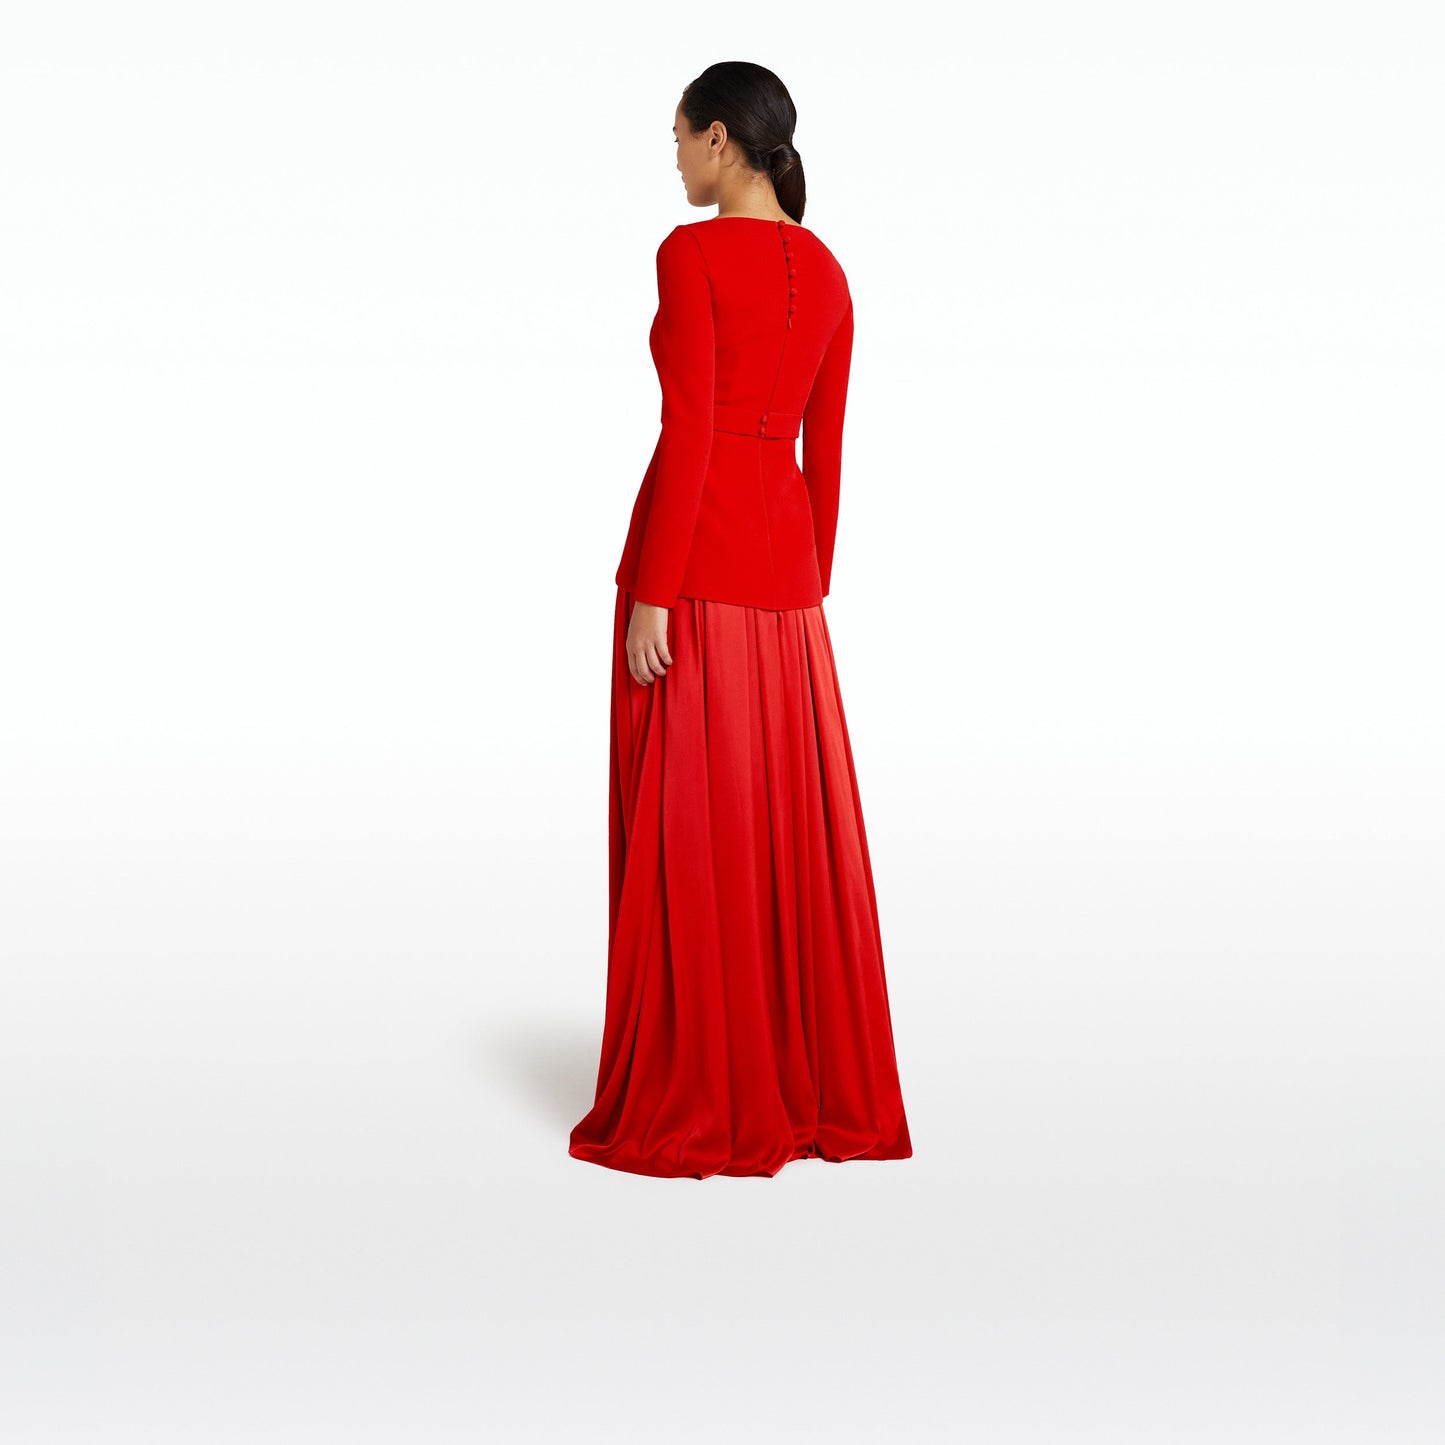 Desta Cherry Red Long Dress